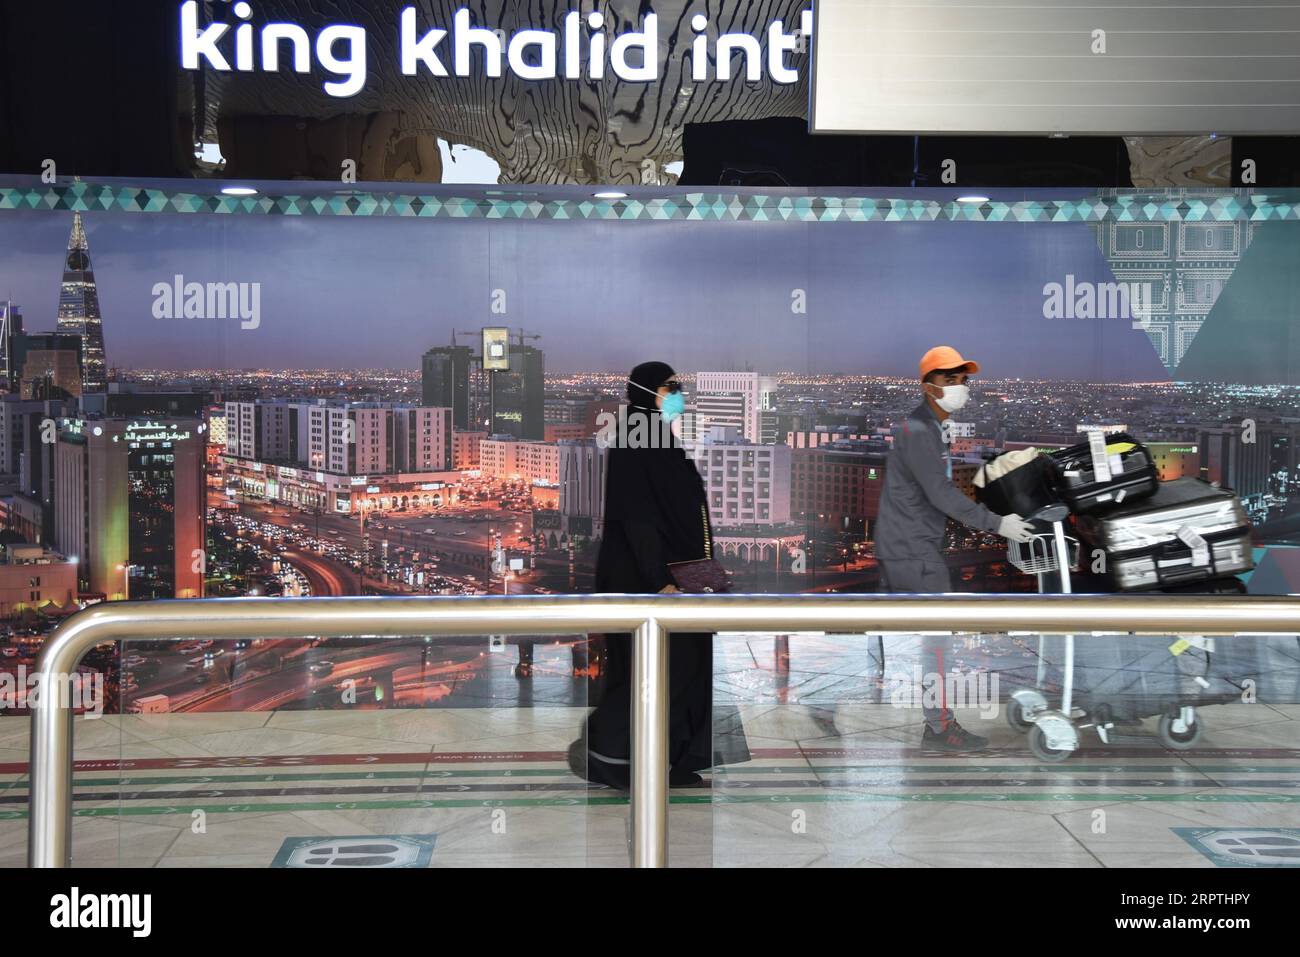 200415 -- RIAD, 15. April 2020 -- Menschen, die Gesichtsmasken tragen, gehen am 15. April 2020 am King Khalid International Airport in Riad, Saudi-Arabien, spazieren. Saudi-Arabien gab am Mittwoch die Registrierung von 493 neuen COVID-19-Fällen bekannt, womit die Gesamtzahl auf 5.862 gestiegen ist. SAUDI-ARABIEN-RIAD-COVID-19-FÄLLE TuxYifan PUBLICATIONxNOTxINxCHN Stockfoto